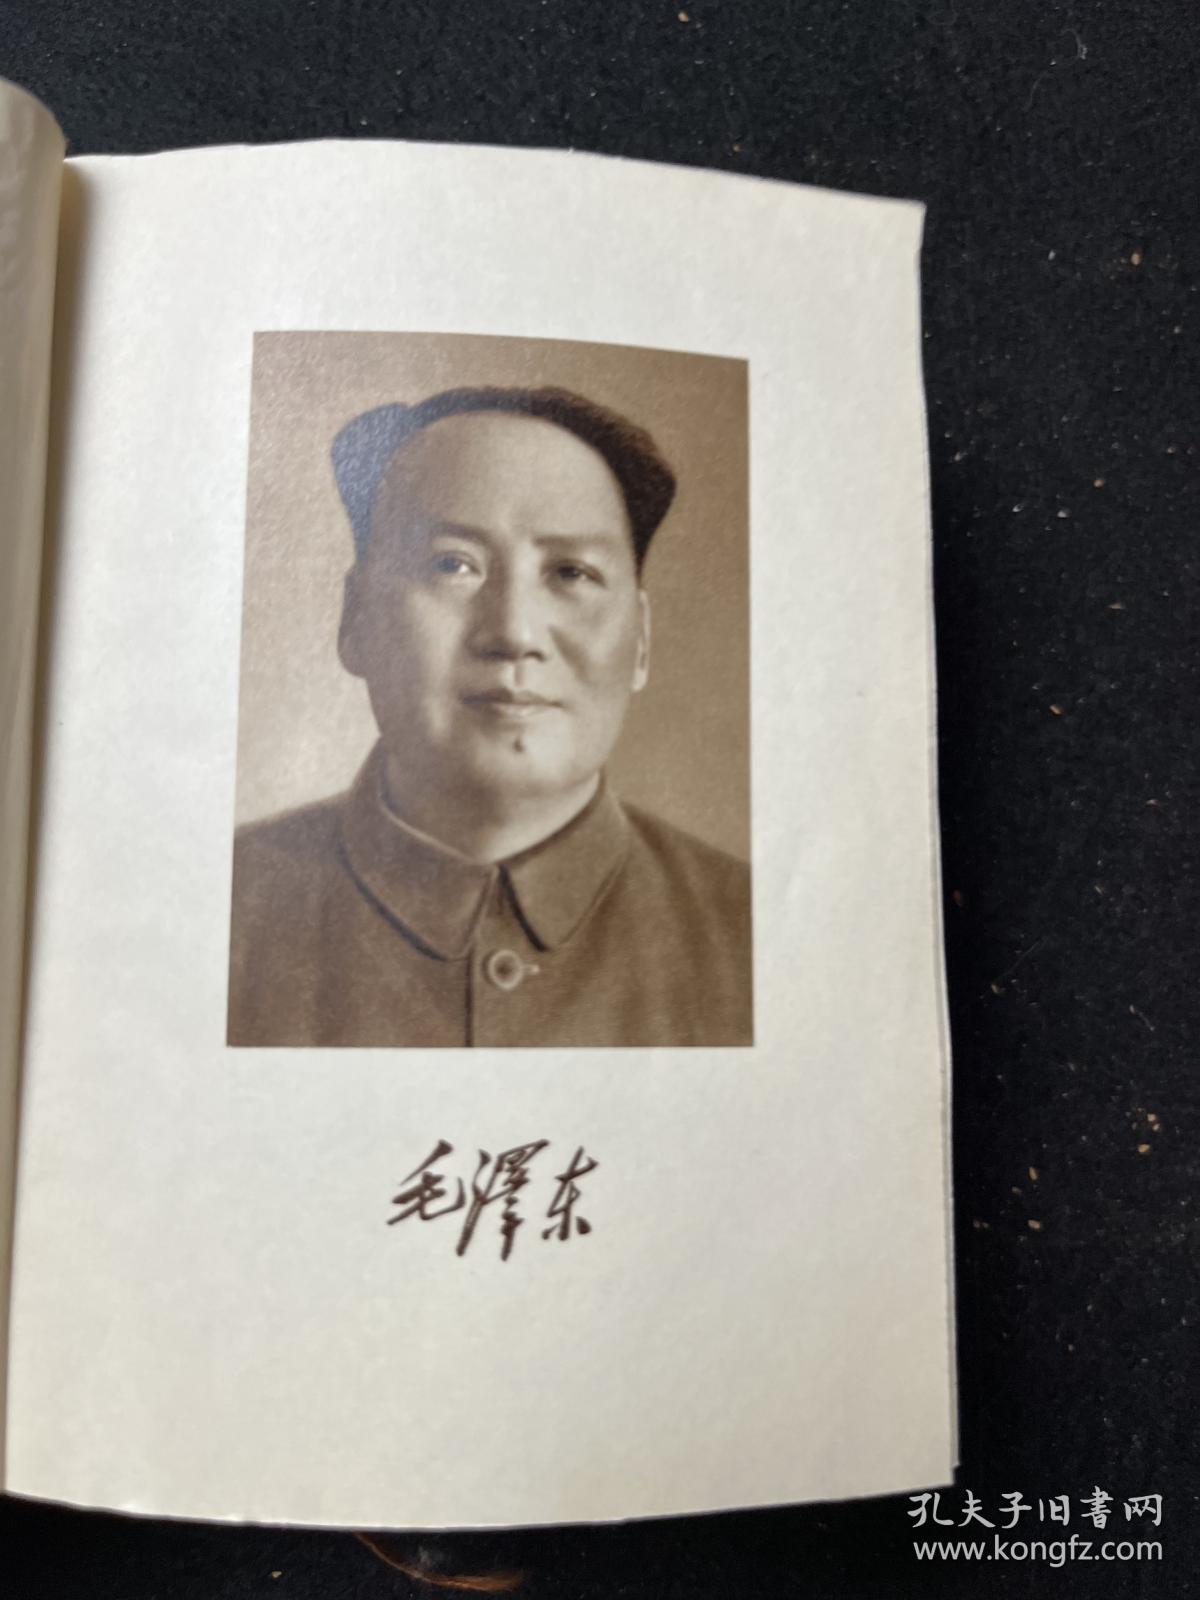 毛泽东选集 （一卷本）红塑皮 1964年4月第一版1967年11月改横排袖珍本 1968年8月北京市第一次印刷